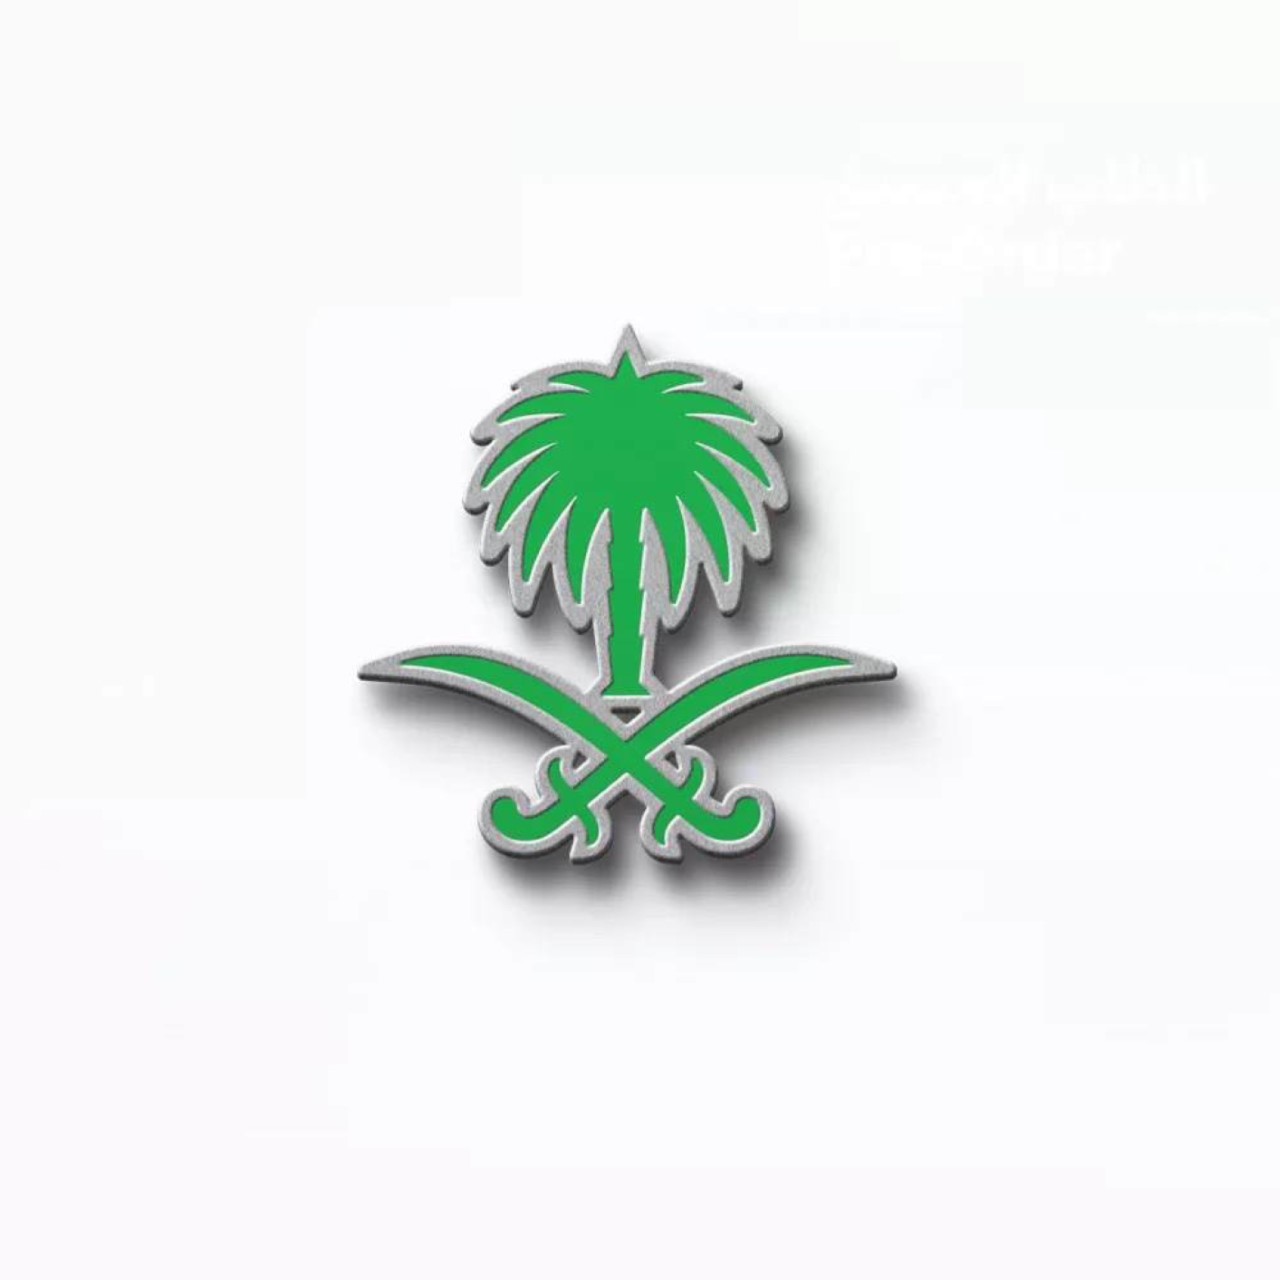 السيفان في شعار المملكة العربية